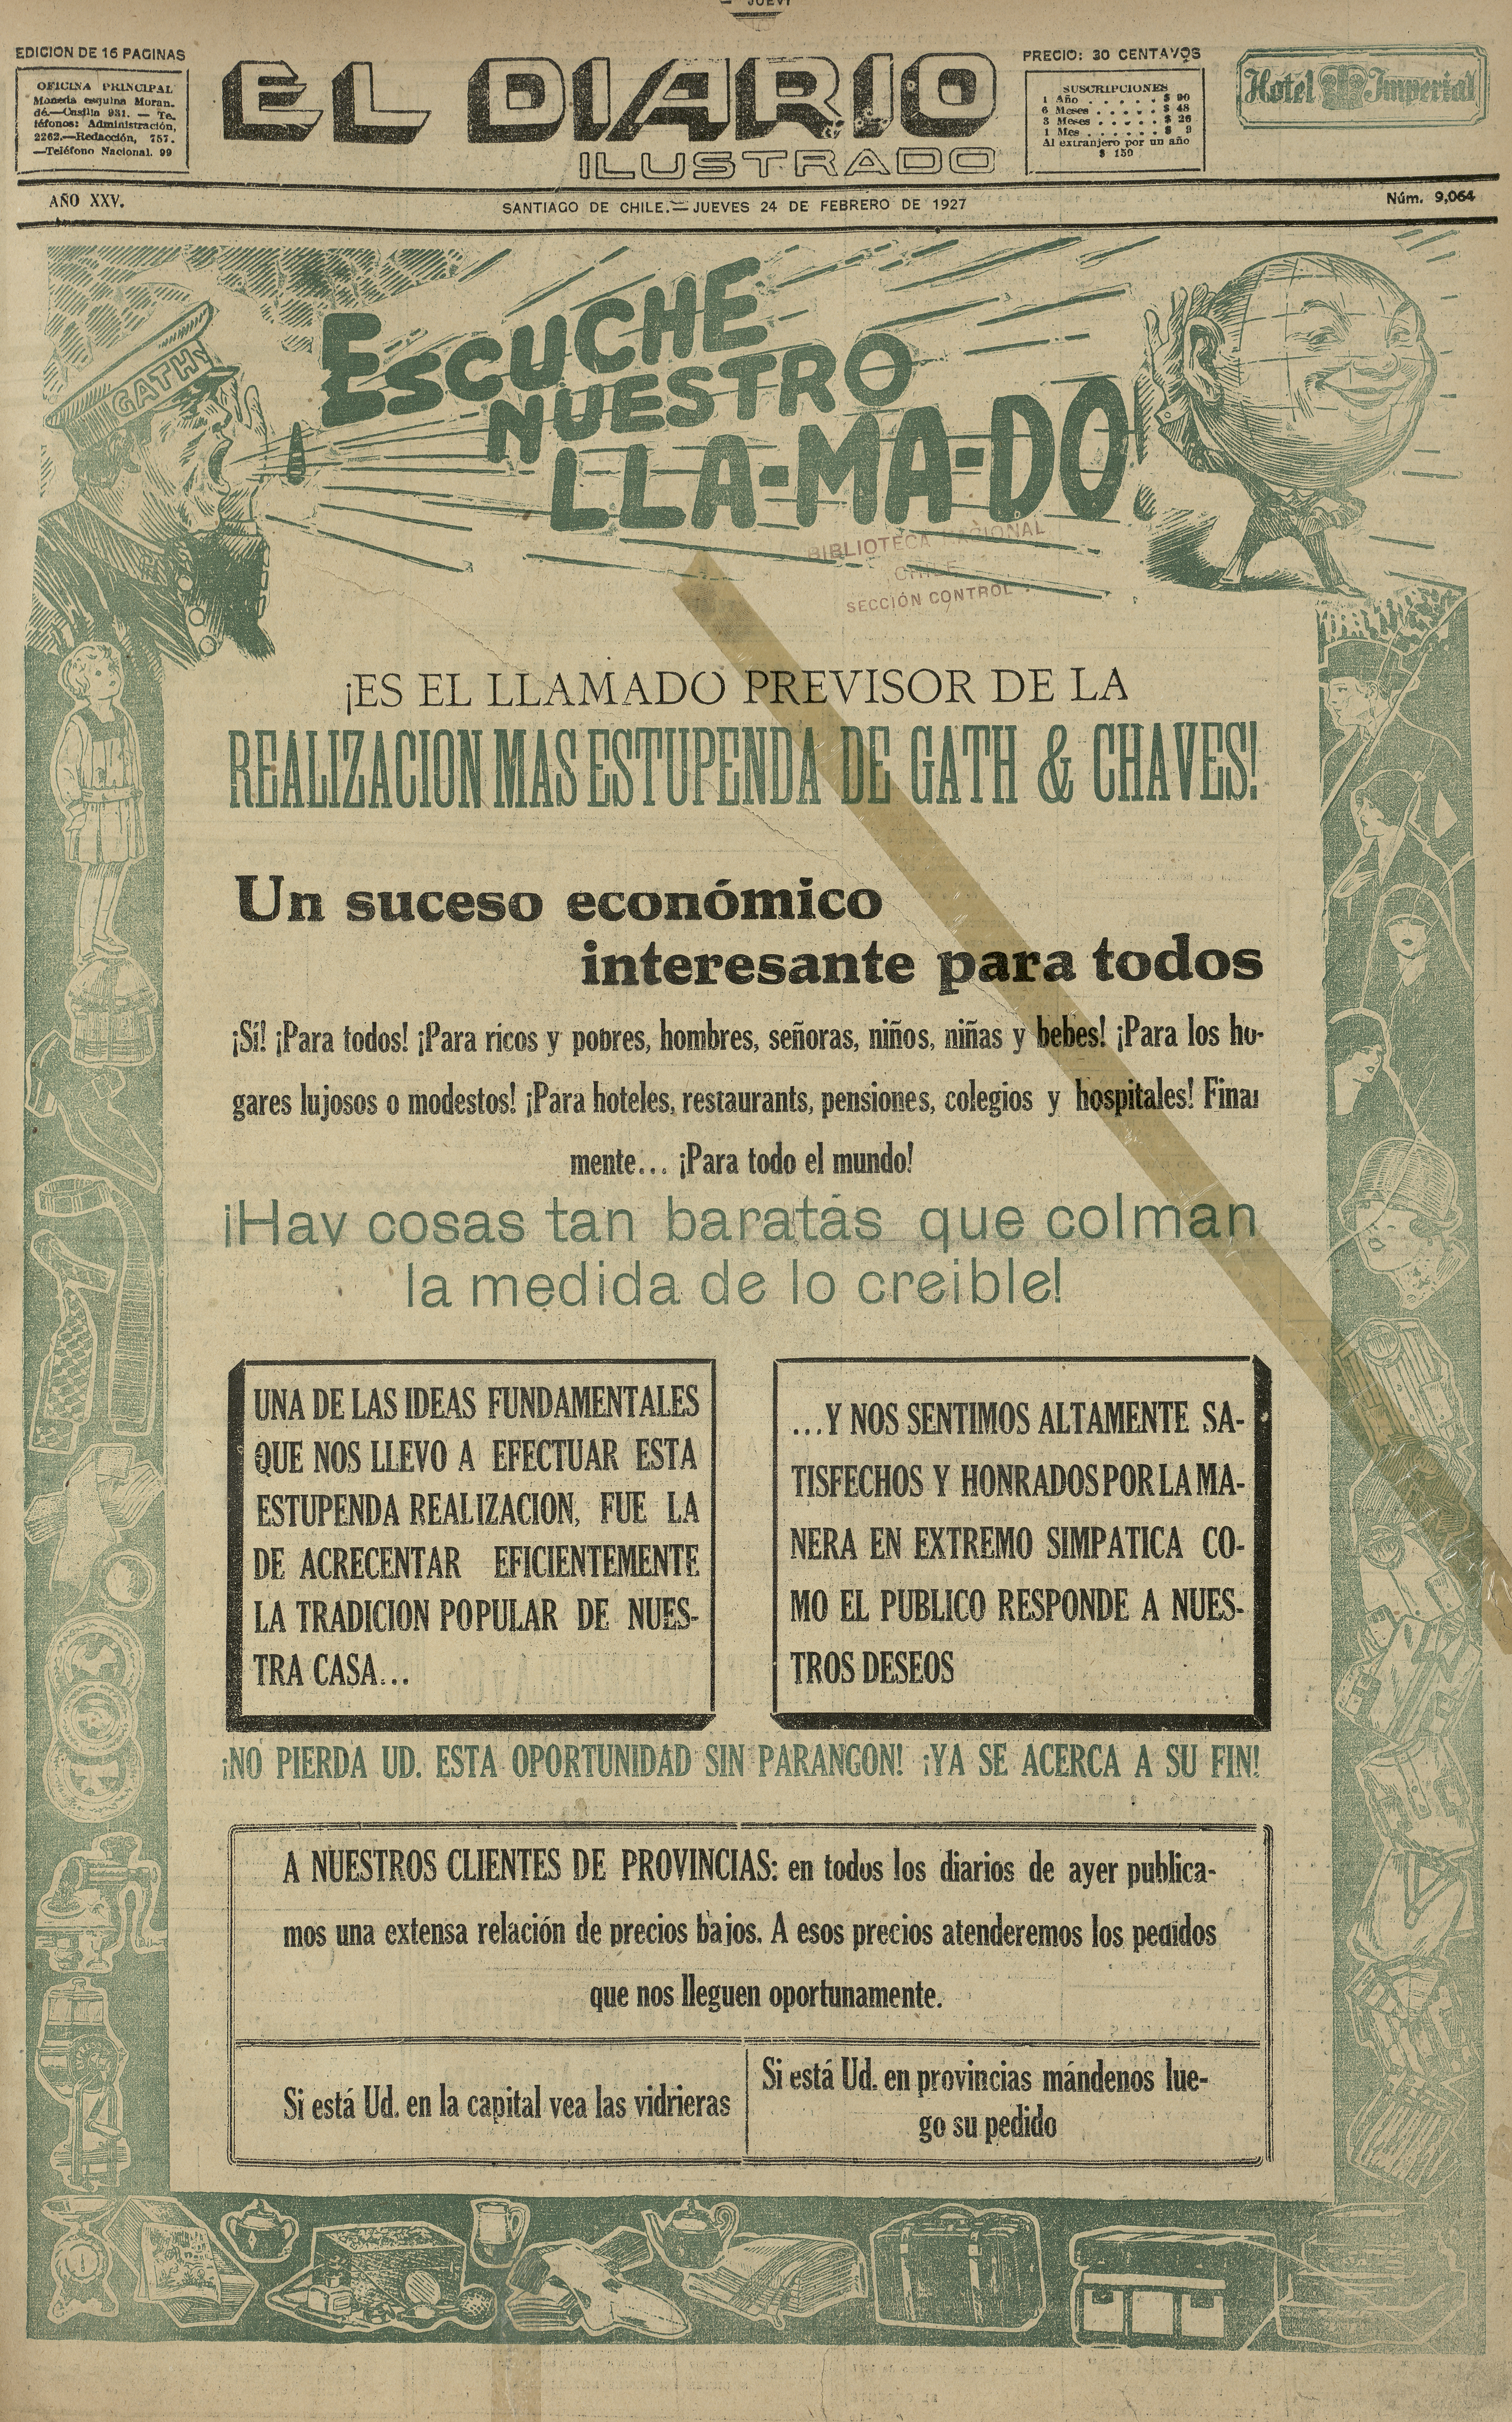 El Diario Ilustrado. Santiago. N° 9064. (24 de febrero de 1927). P. 3 y p. 25.